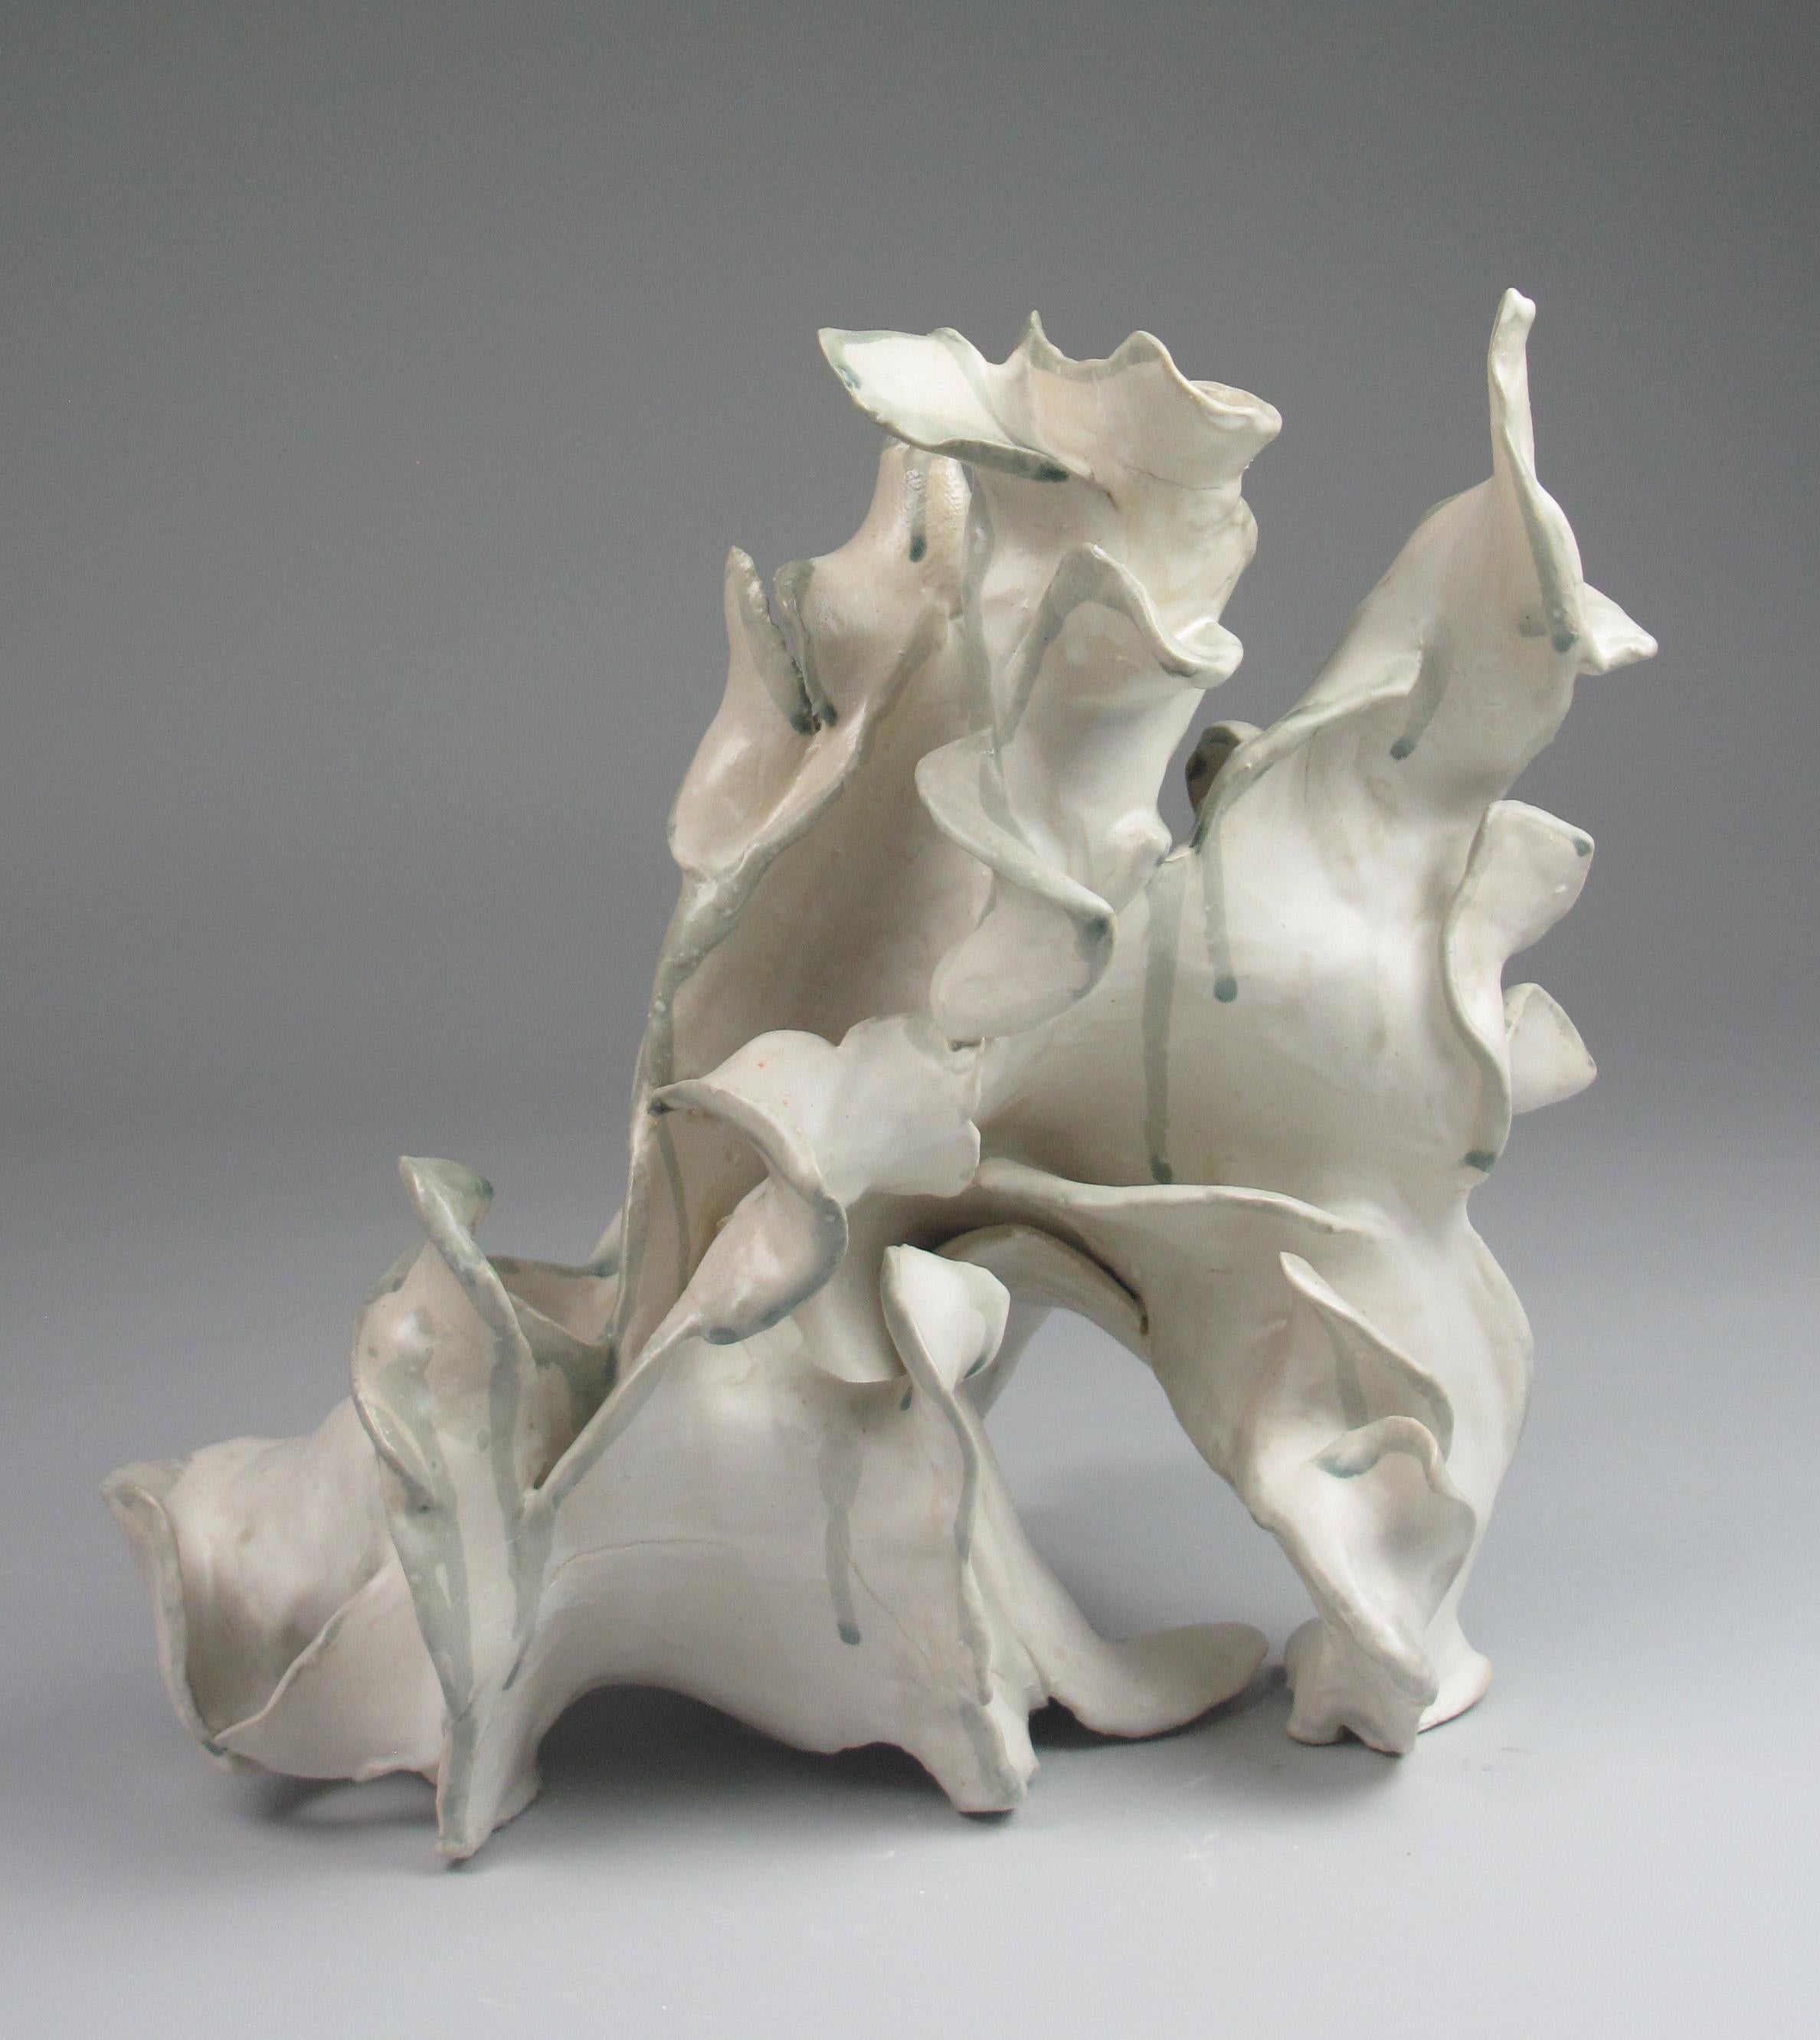 "Bloom", gestural, ceramic, white, cream, grey, teal, stoneware, sculpture - Sculpture by Sara Fine-Wilson